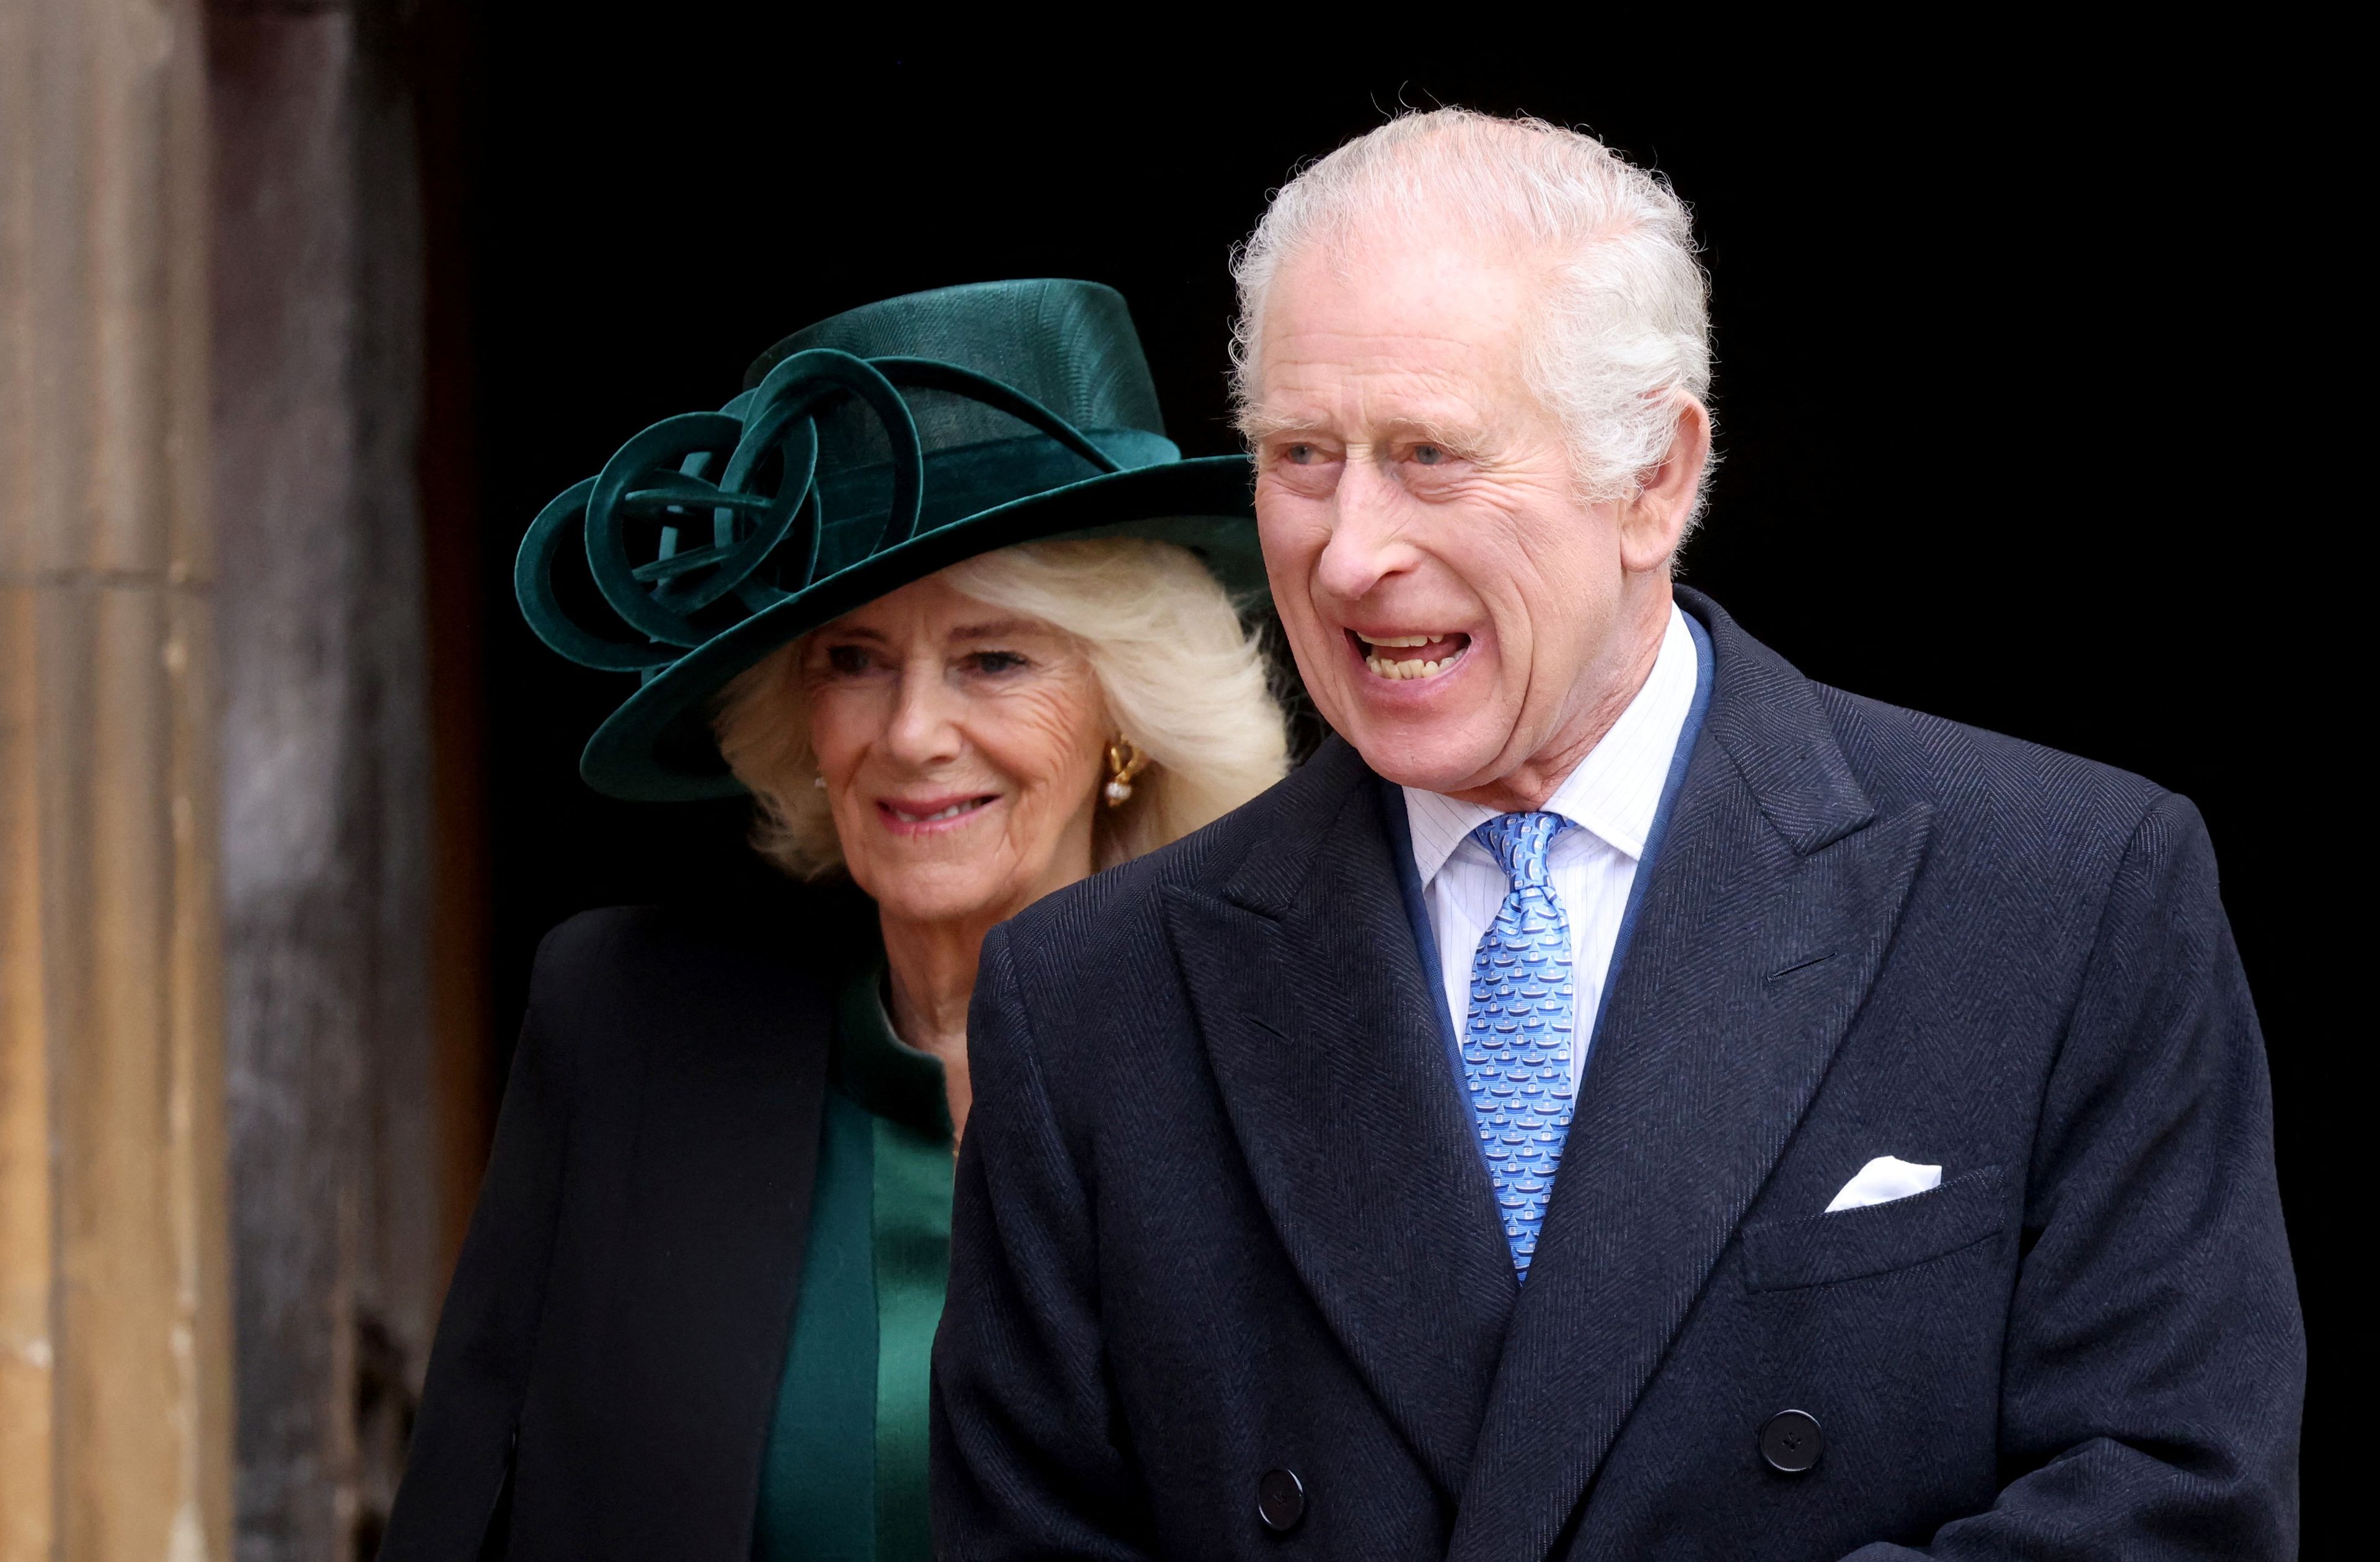 La foto del día: El rey Carlos III de Inglaterra reapareció ayer en la misa de Pascua, acompañado de la reina Camila, en su primer acto público desde que fue diagnosticado de cáncer.